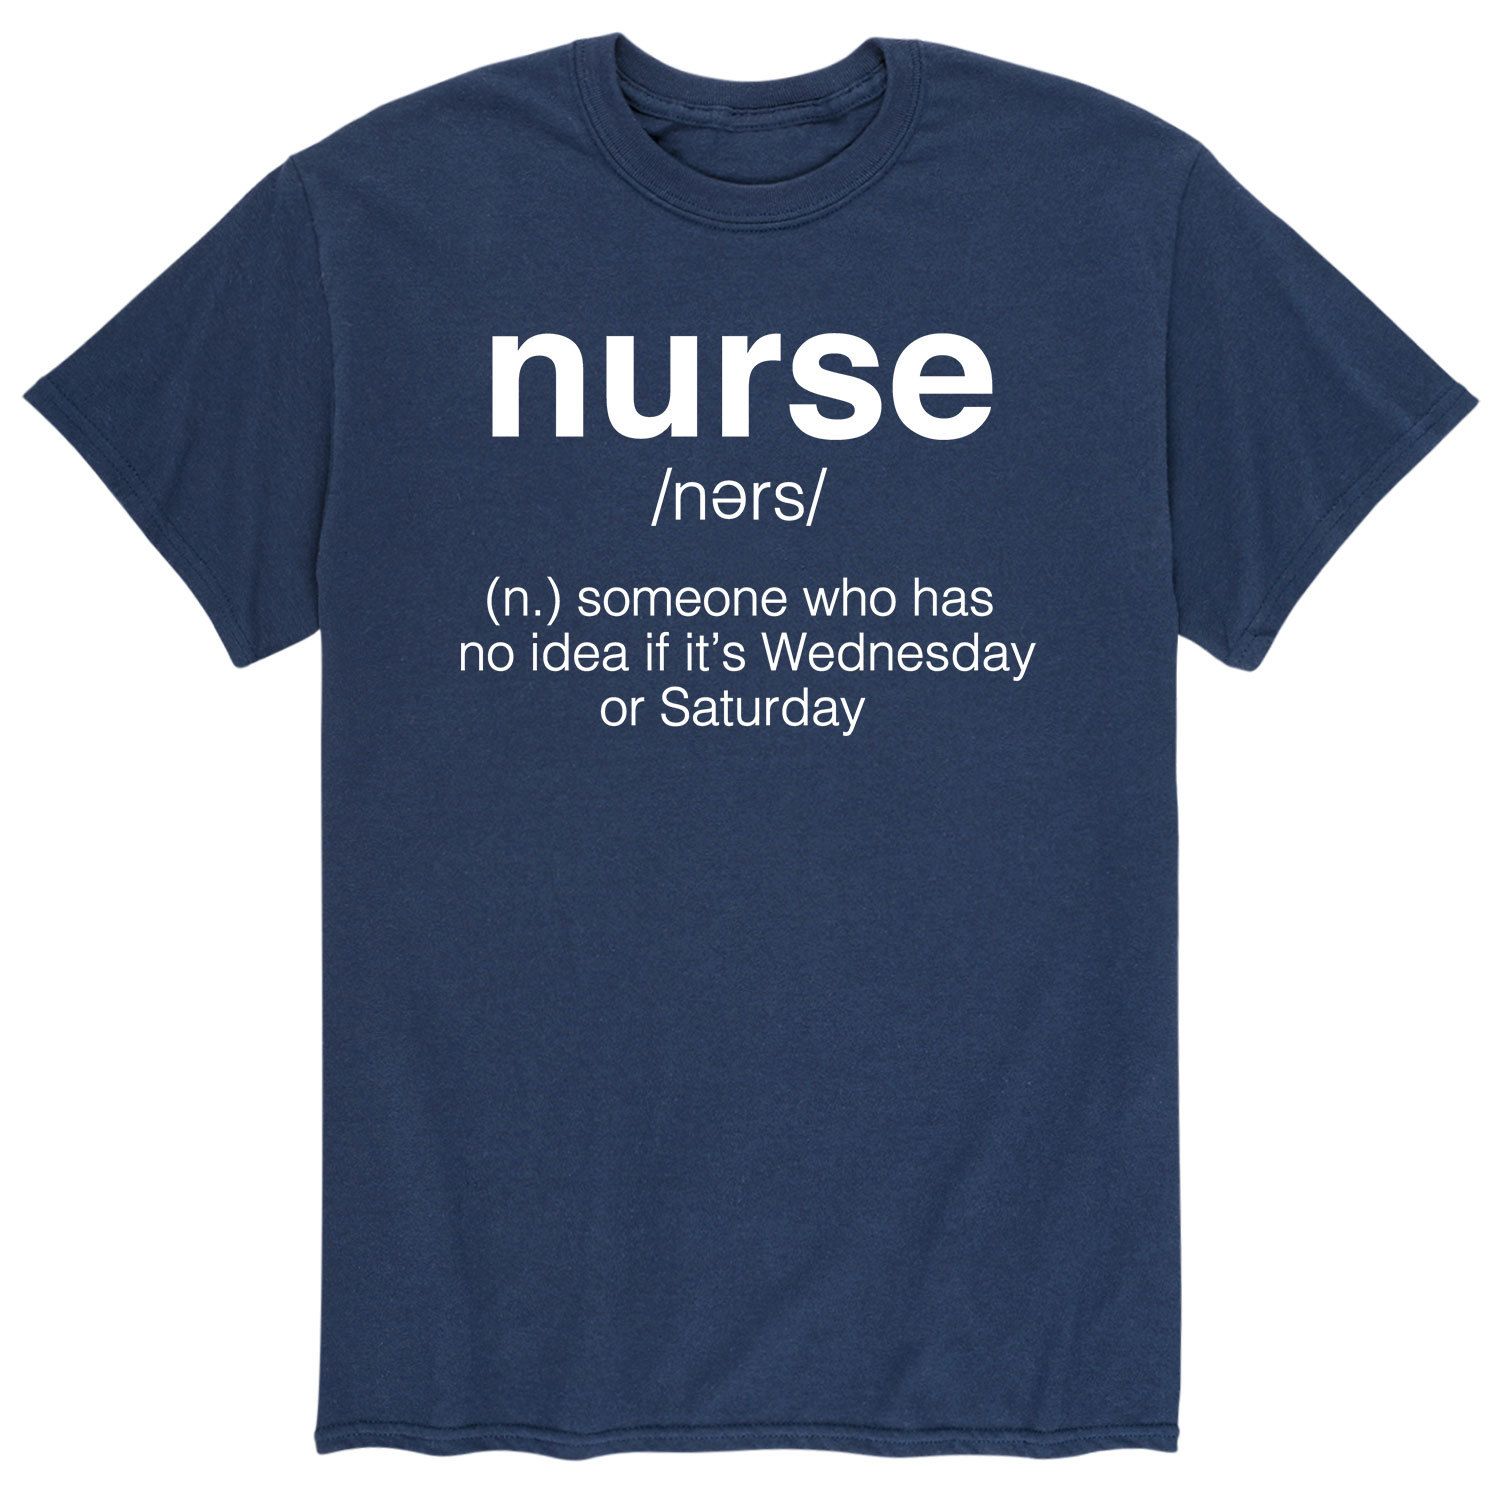 Мужская футболка с изображением медсестры Licensed Character мужская футболка медсестры герои повседневности